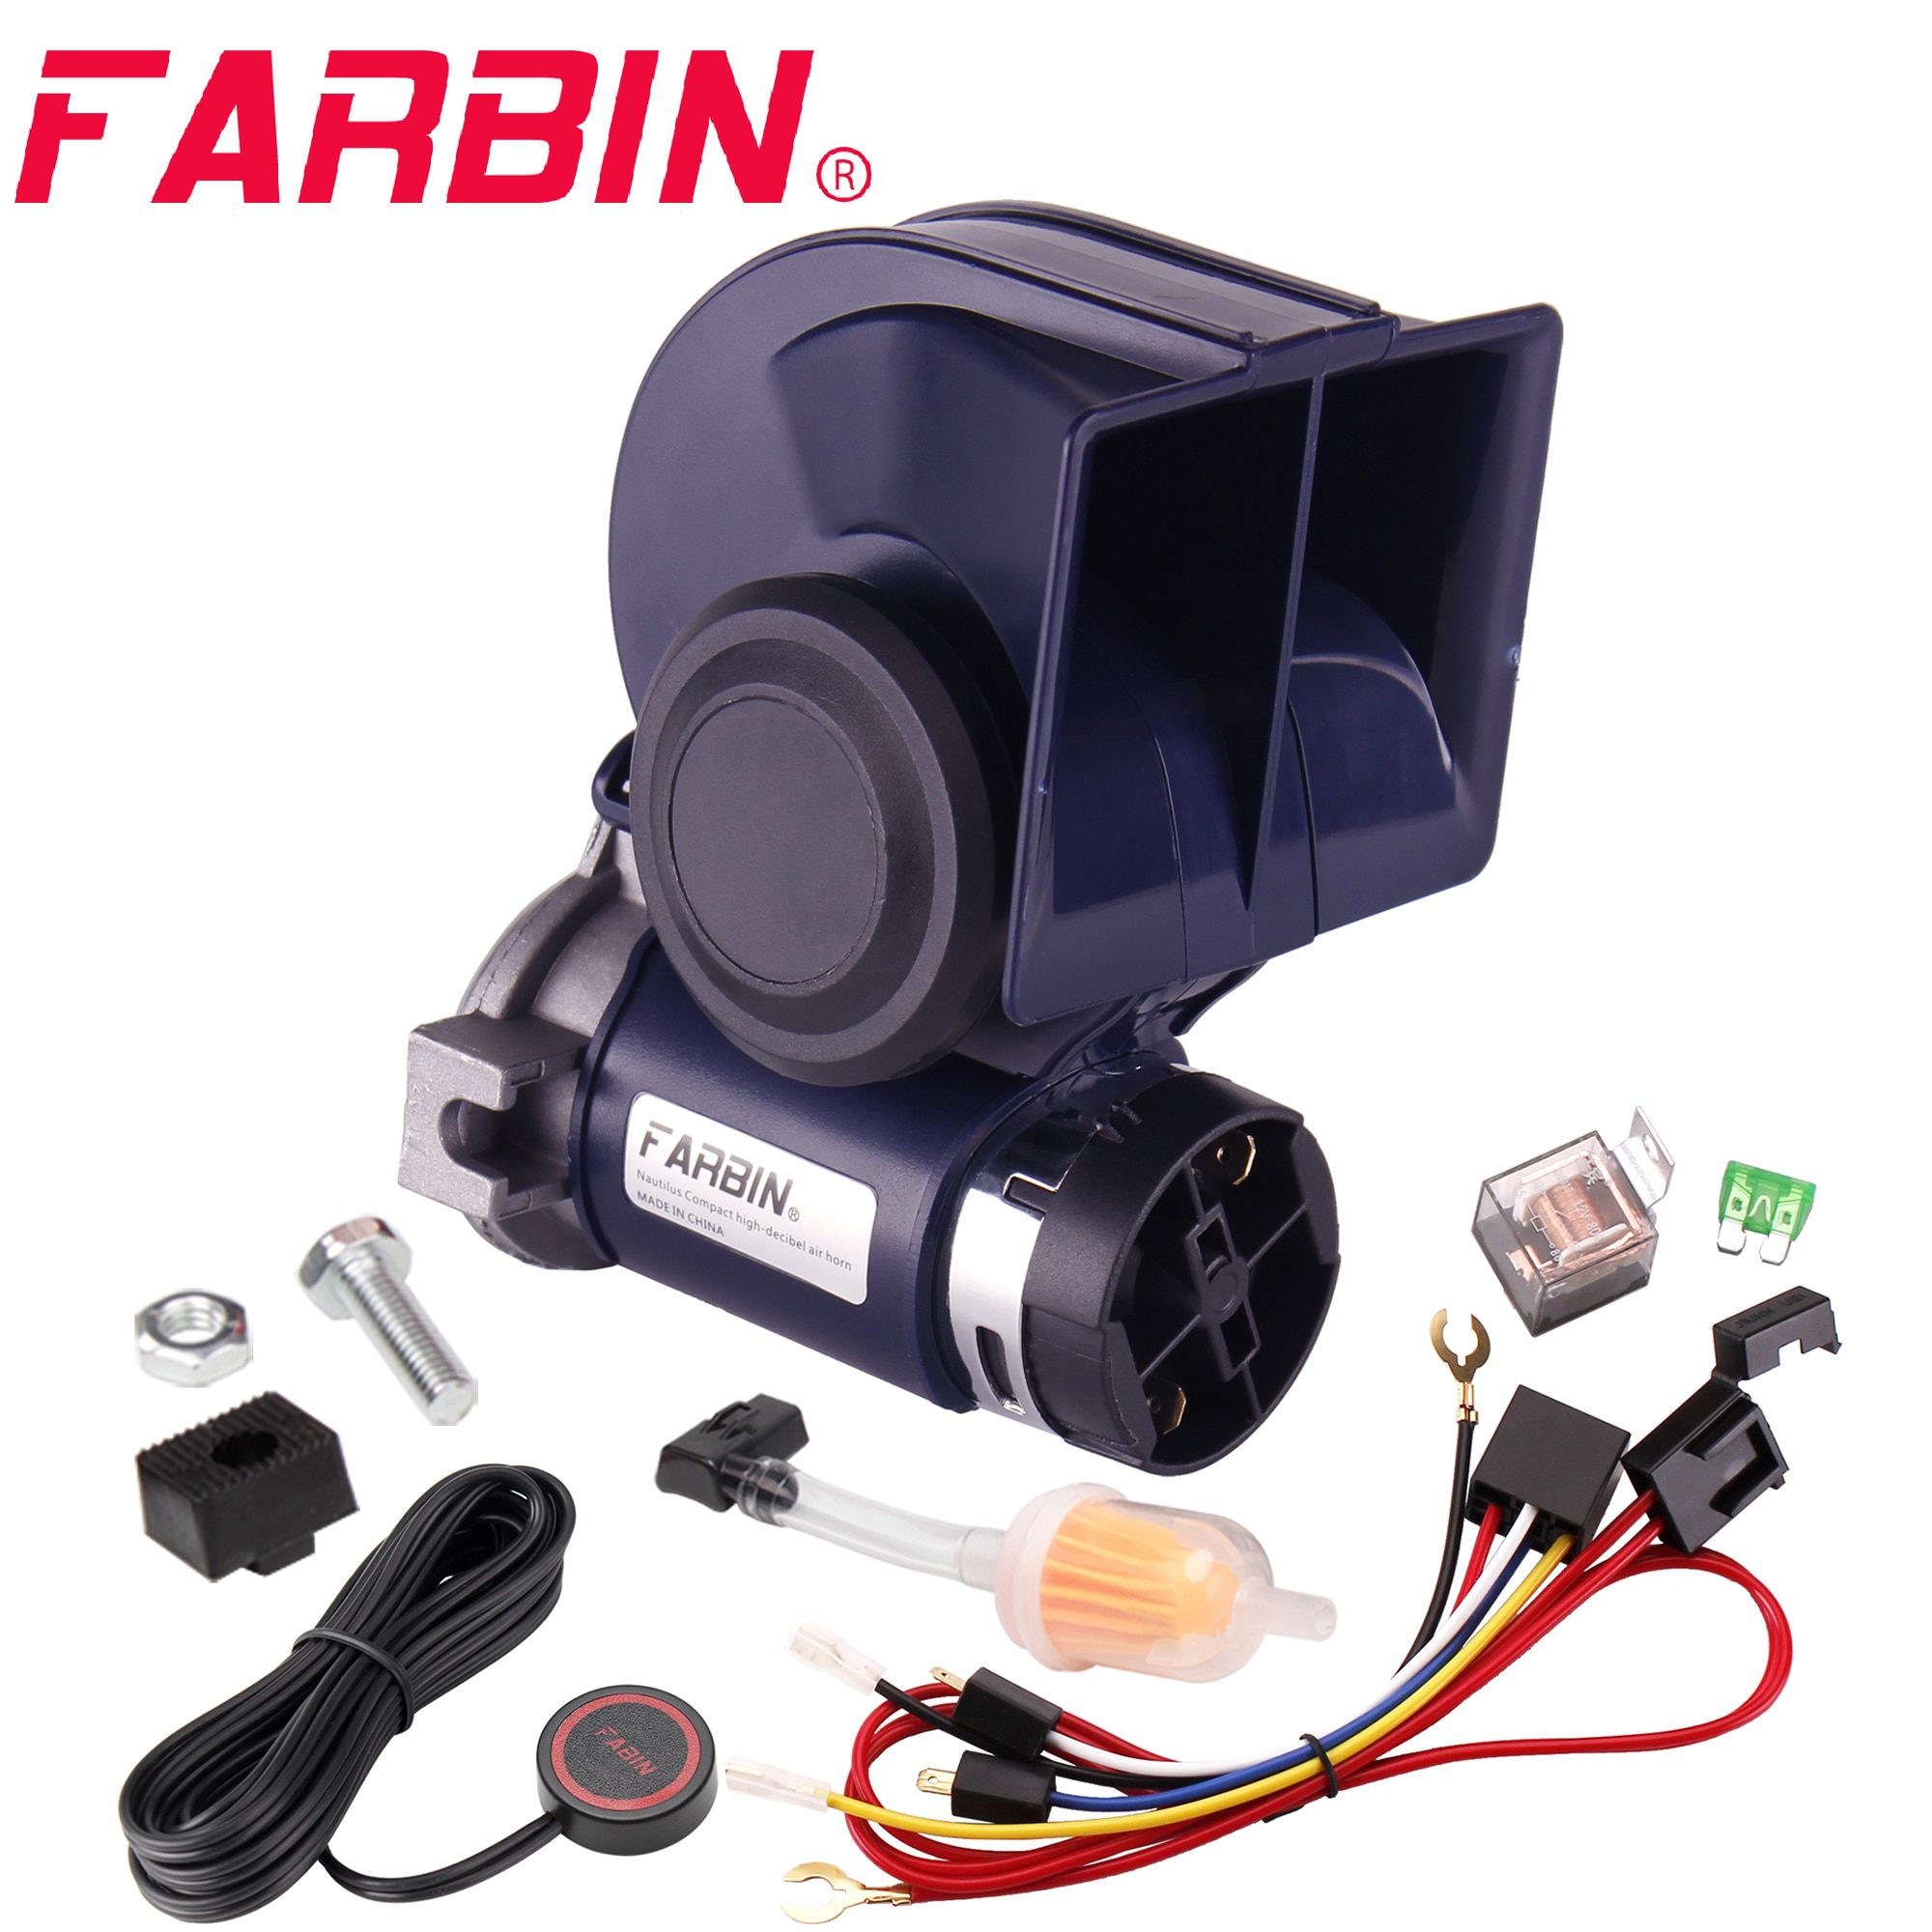  FARBIN 12V 150db Air Horn kit, Super Loud 18 Inches